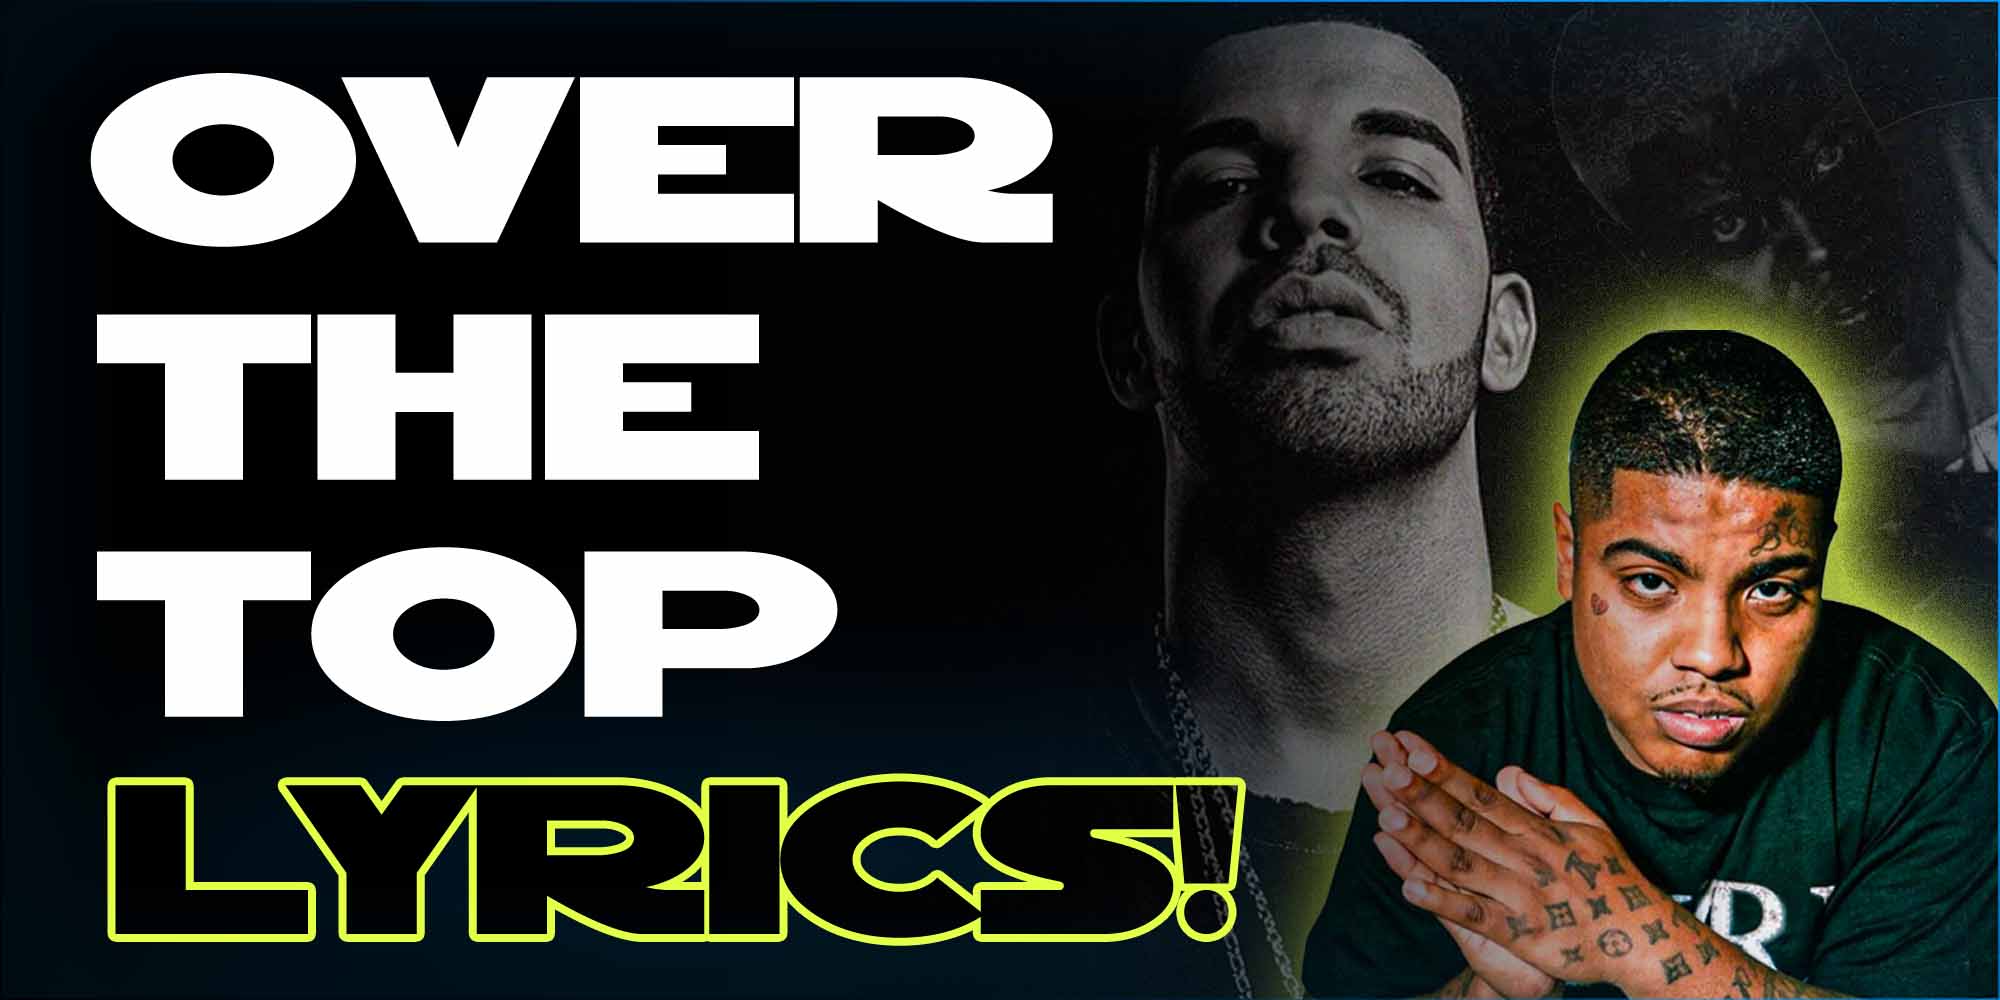 Over the Top – Smiley & Drake Lyrics